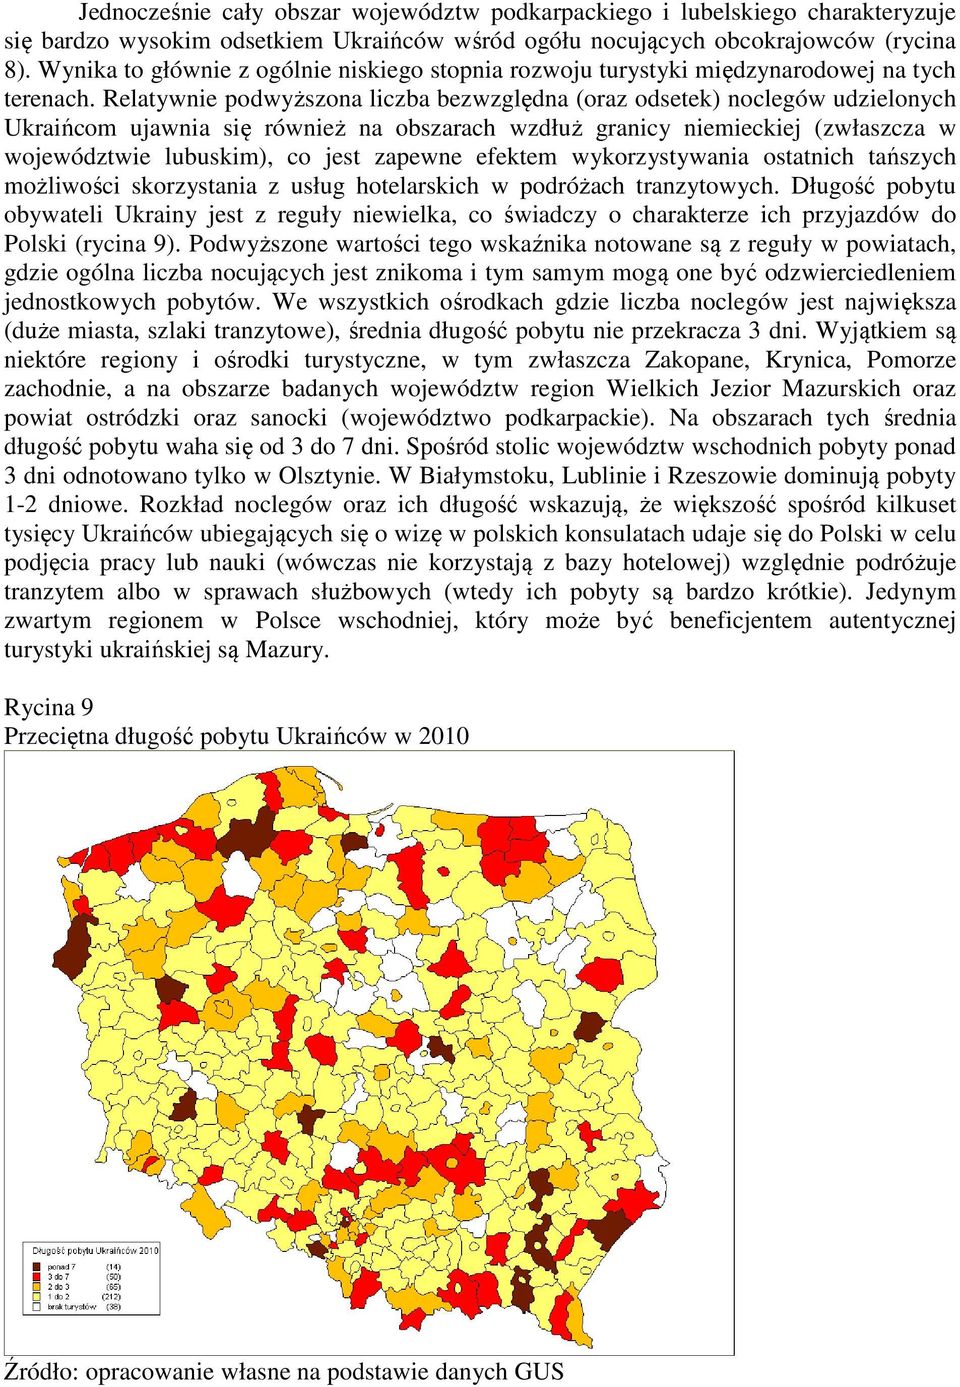 Relatywnie podwyższona liczba bezwzględna (oraz odsetek) noclegów udzielonych Ukraińcom ujawnia się również na obszarach wzdłuż granicy niemieckiej (zwłaszcza w województwie lubuskim), co jest